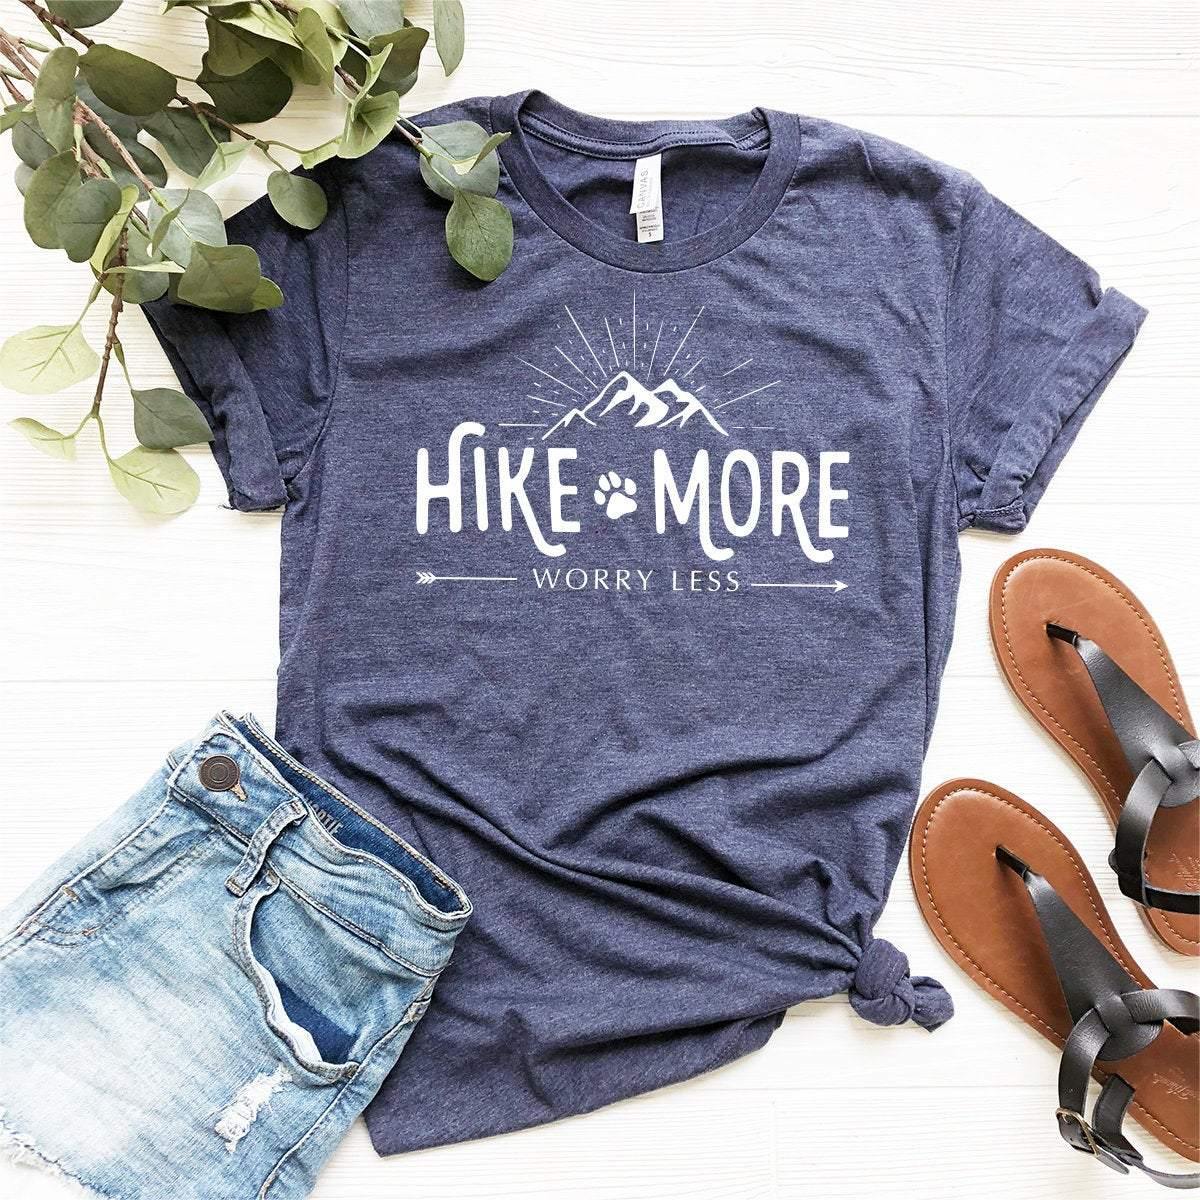 Hiking Shirt,Camping Shirt,Adventure Shirt,Climbing Shirt,Camper Shirt,Hike More Worry Less Shirt,Wanderlust Shirt, - Fastdeliverytees.com